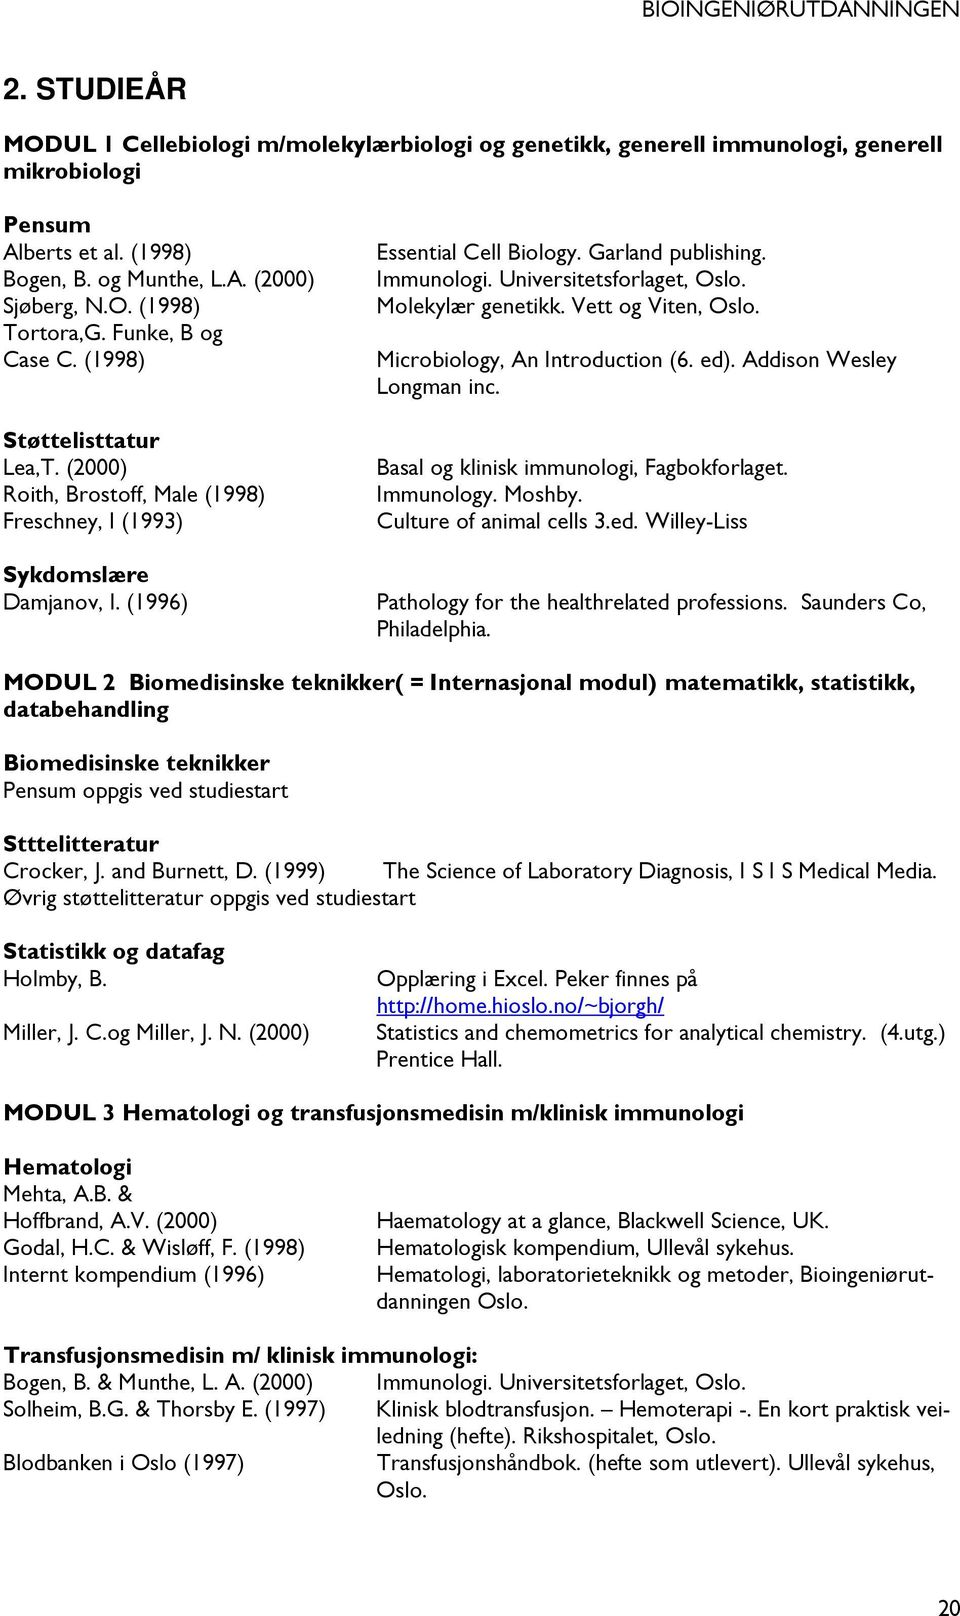 Universitetsforlaget, Oslo. Molekylær genetikk. Vett og Viten, Oslo. Microbiology, An Introduction (6. ed). Addison Wesley Longman inc. Basal og klinisk immunologi, Fagbokforlaget. Immunology. Moshby.